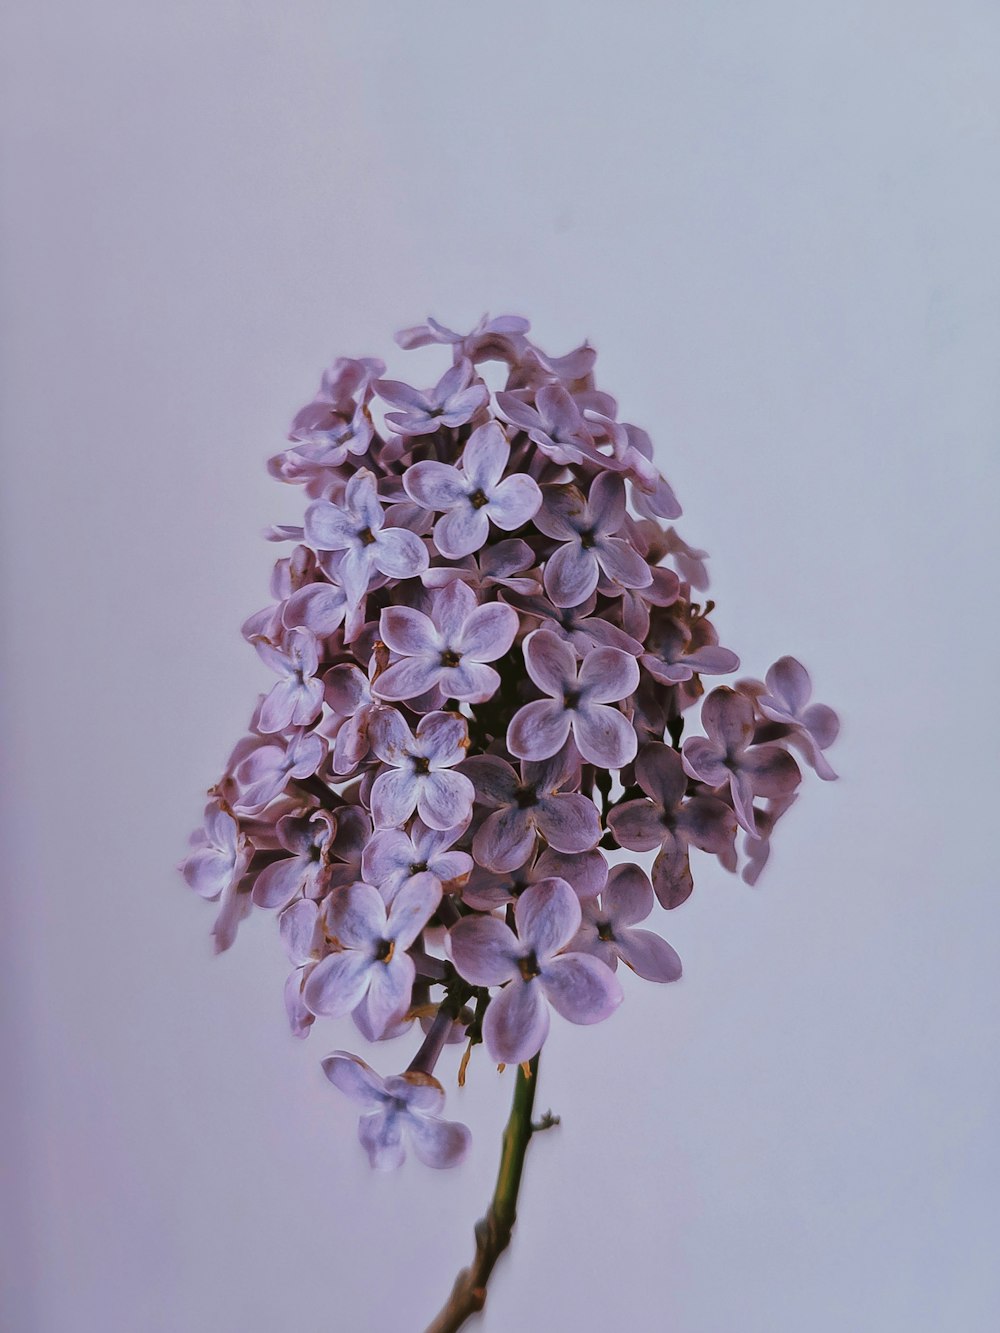 fiore viola e bianco nella fotografia ravvicinata